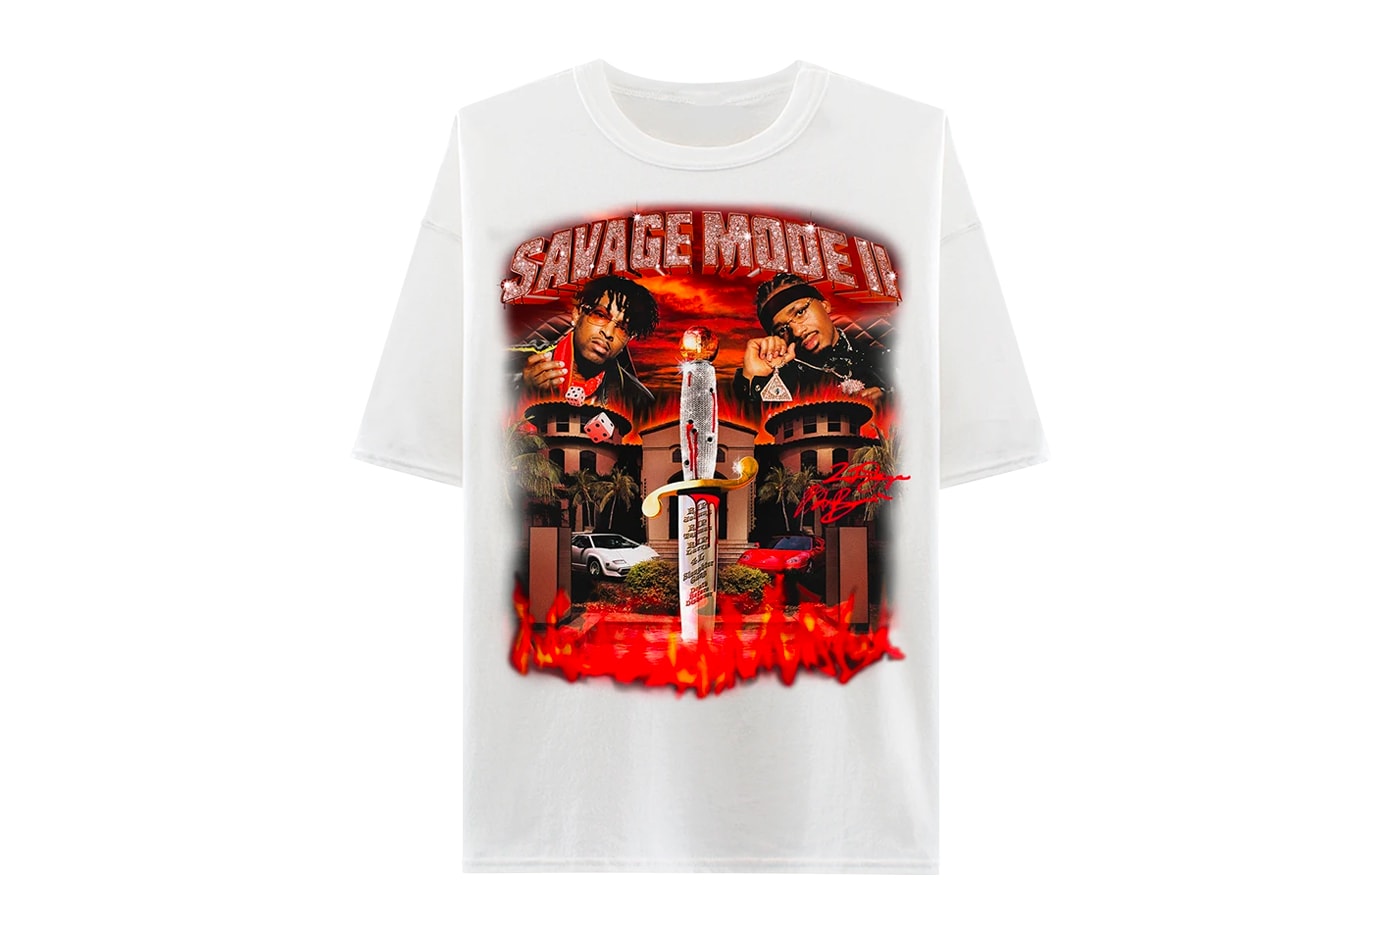 21 Savage x Metro Boomin 'Savage Mode 2' Merch